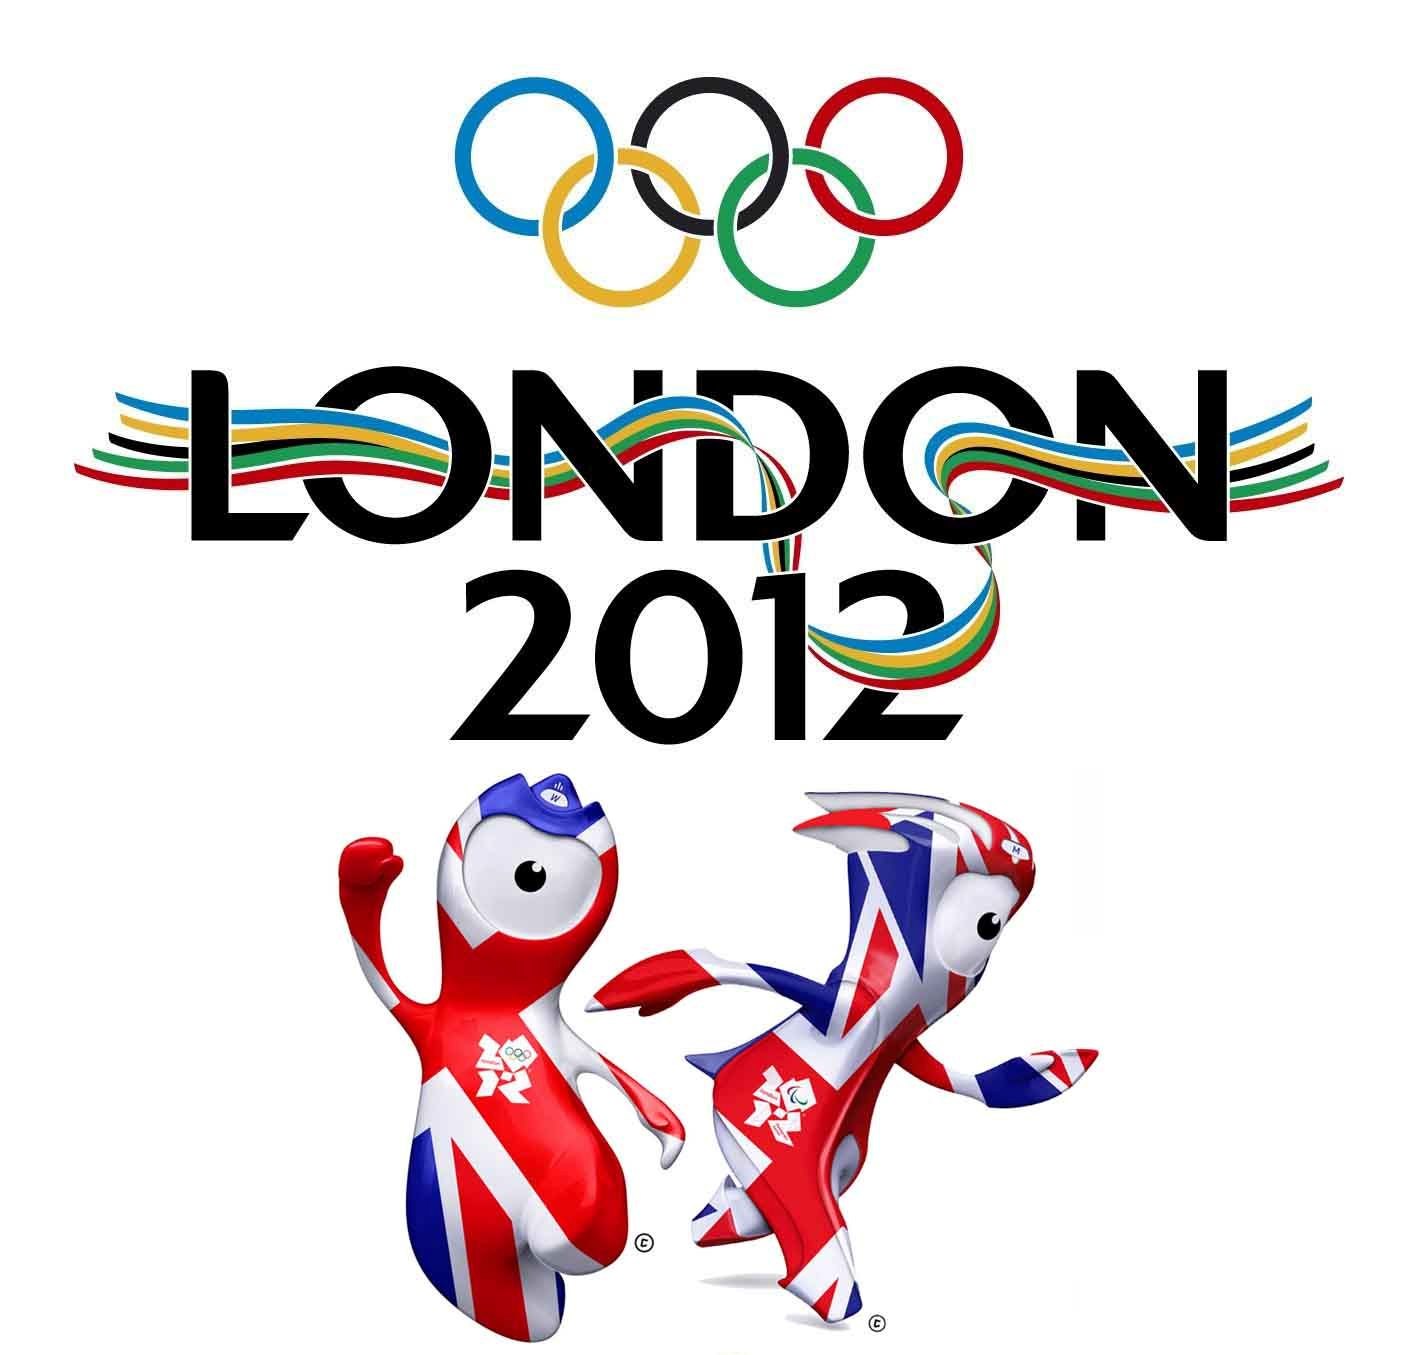 Ои 2012. Олимпийские игры в Лондоне 2012. Олимпийские игры в Великобритании 2012. Эмблема Олимпийских игр 2012. Символ Олимпийских игр 2012.